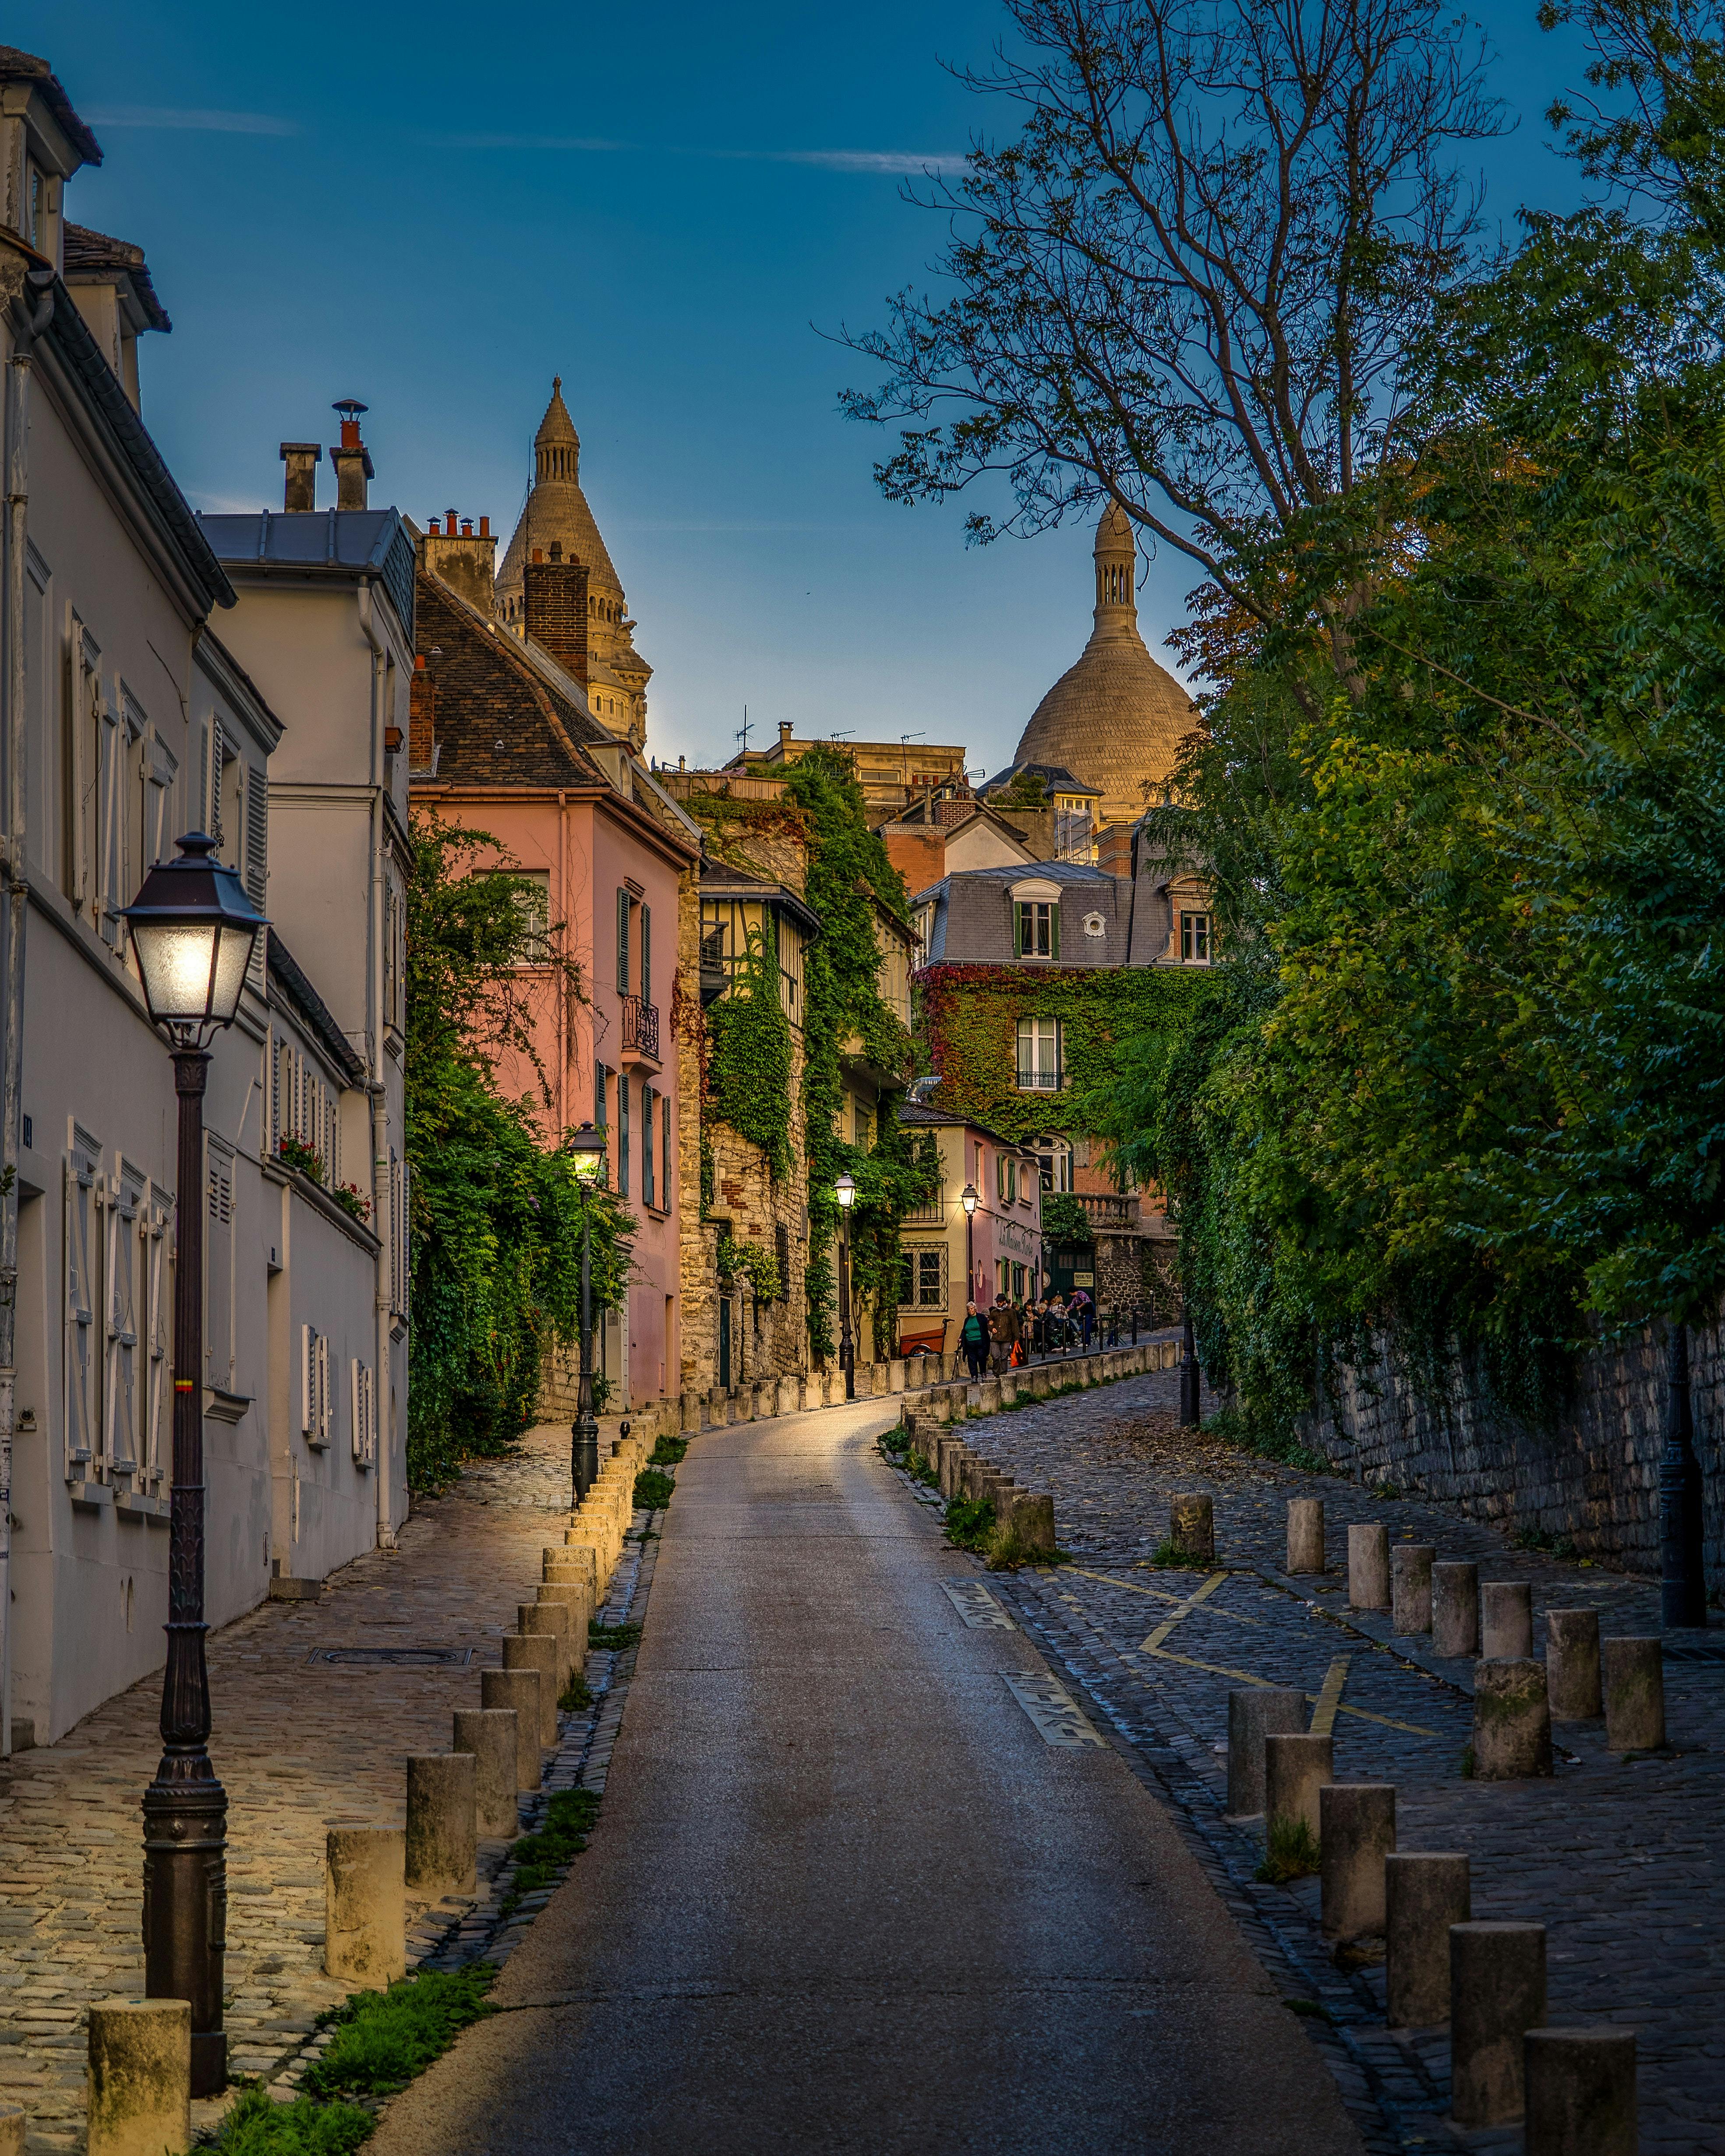 Zelfgeleide audiotour door Montmartre over de geheime verhalen van Parijs